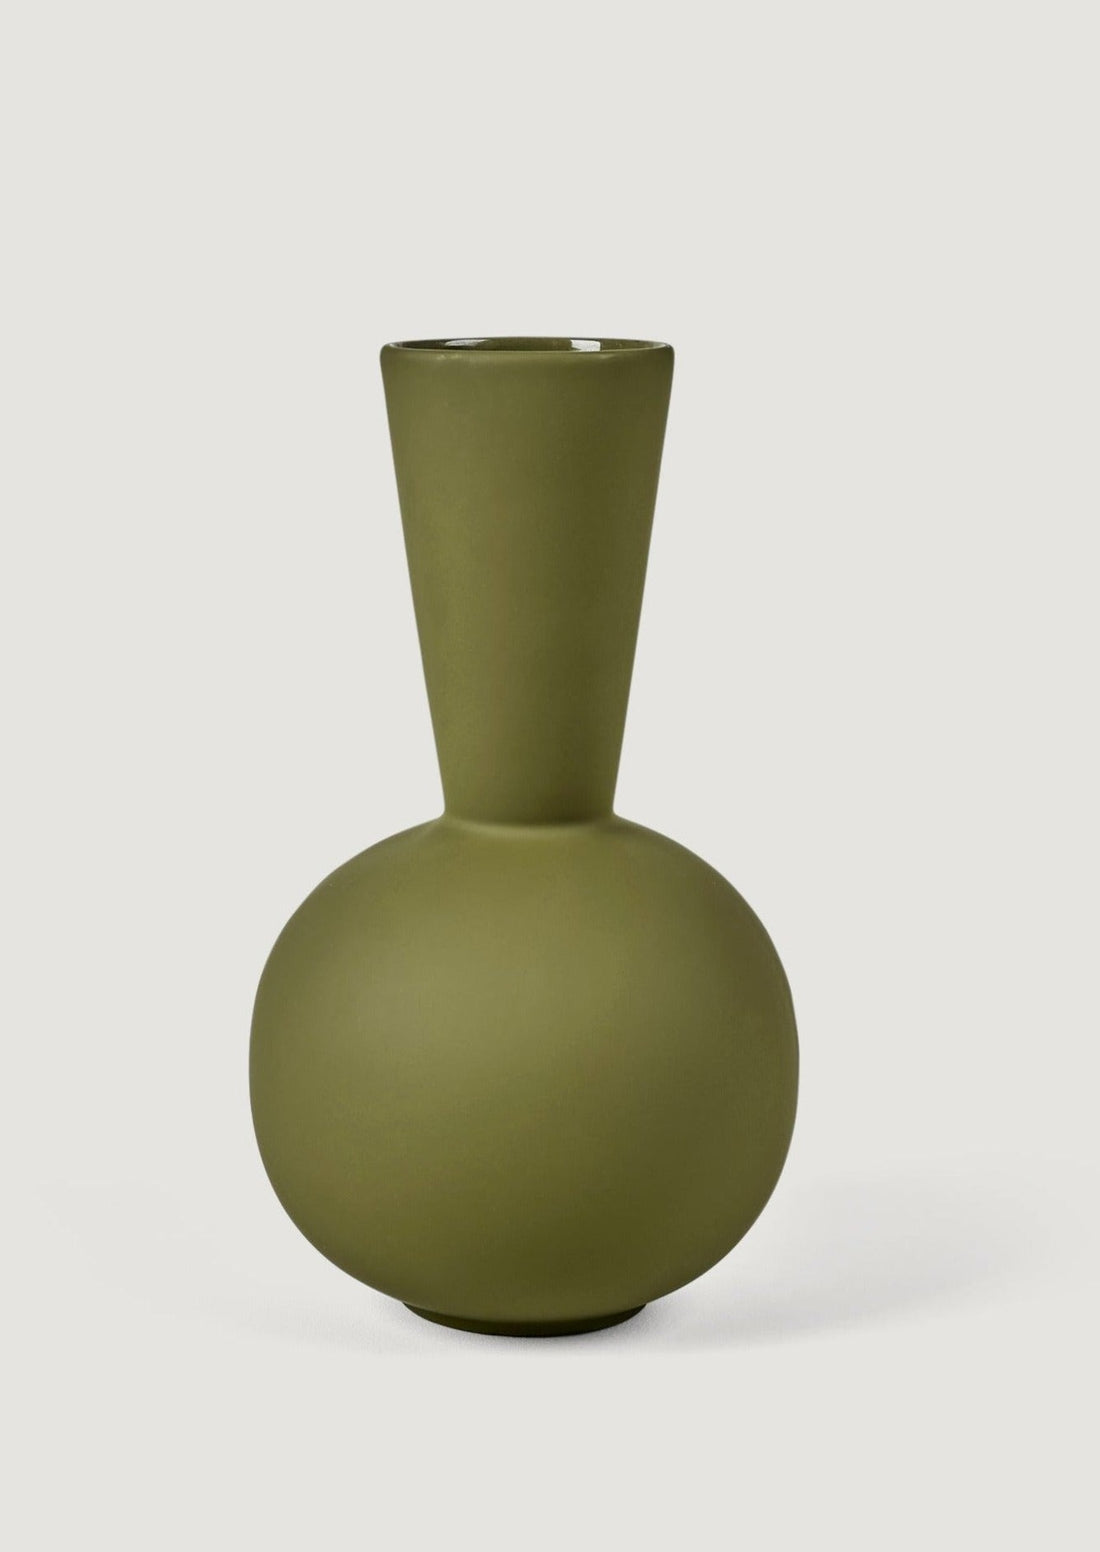 Handmade Ceramic Vases at Afloral Olive Green Trumpet Vase